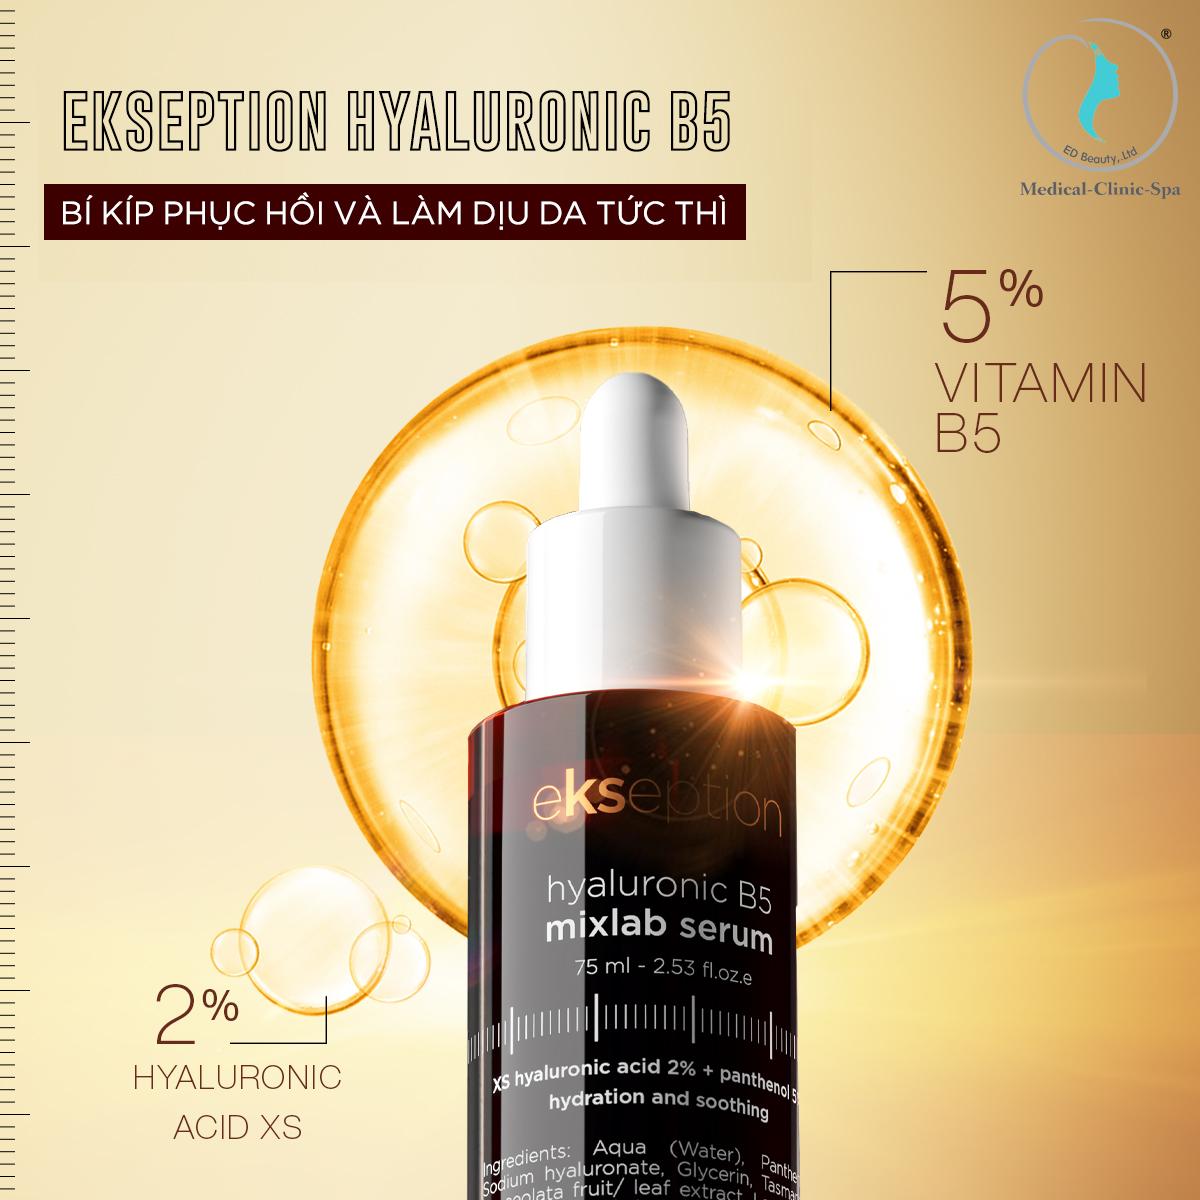 Serum Ekseption Hyaluronic B5 - Bí kíp phục hồi và làm dịu da tức thì